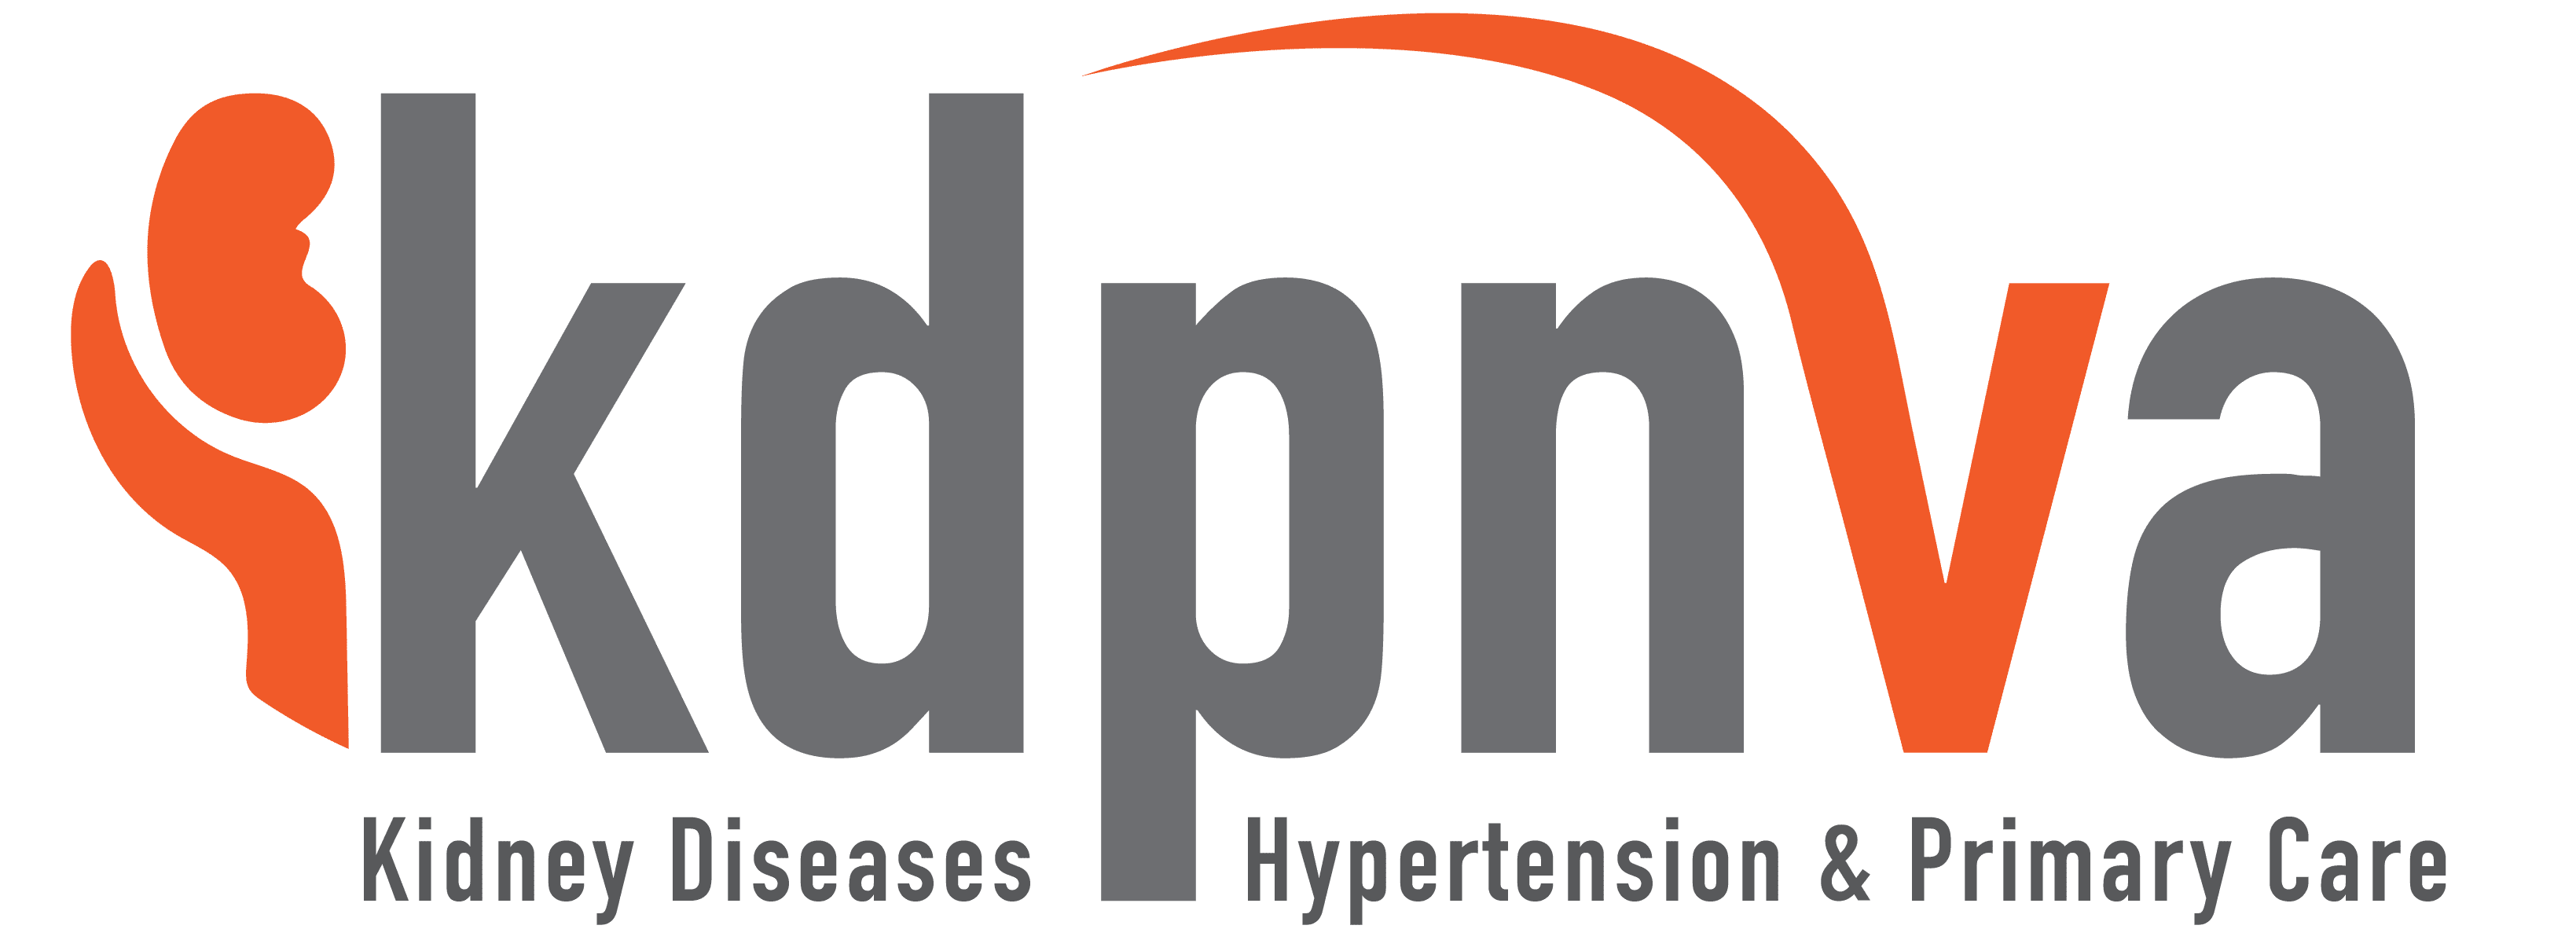 Kidney Diseases, Hypertension & Primary Care of Virginia, LLC